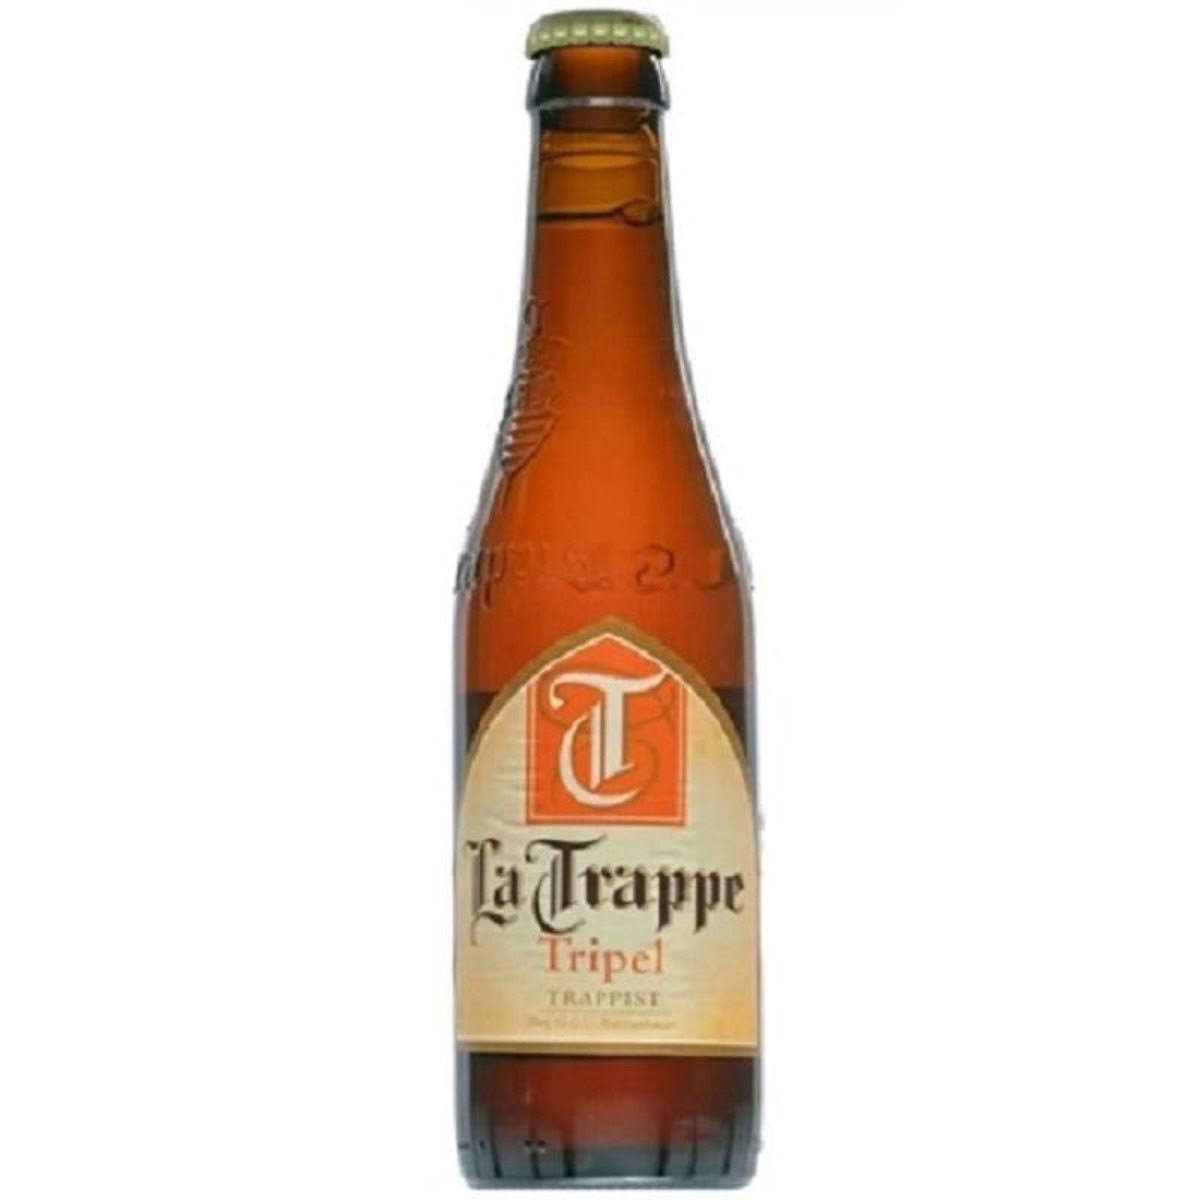 La Trappe Tripel Premium Trappist Lager Beer - 330 ml